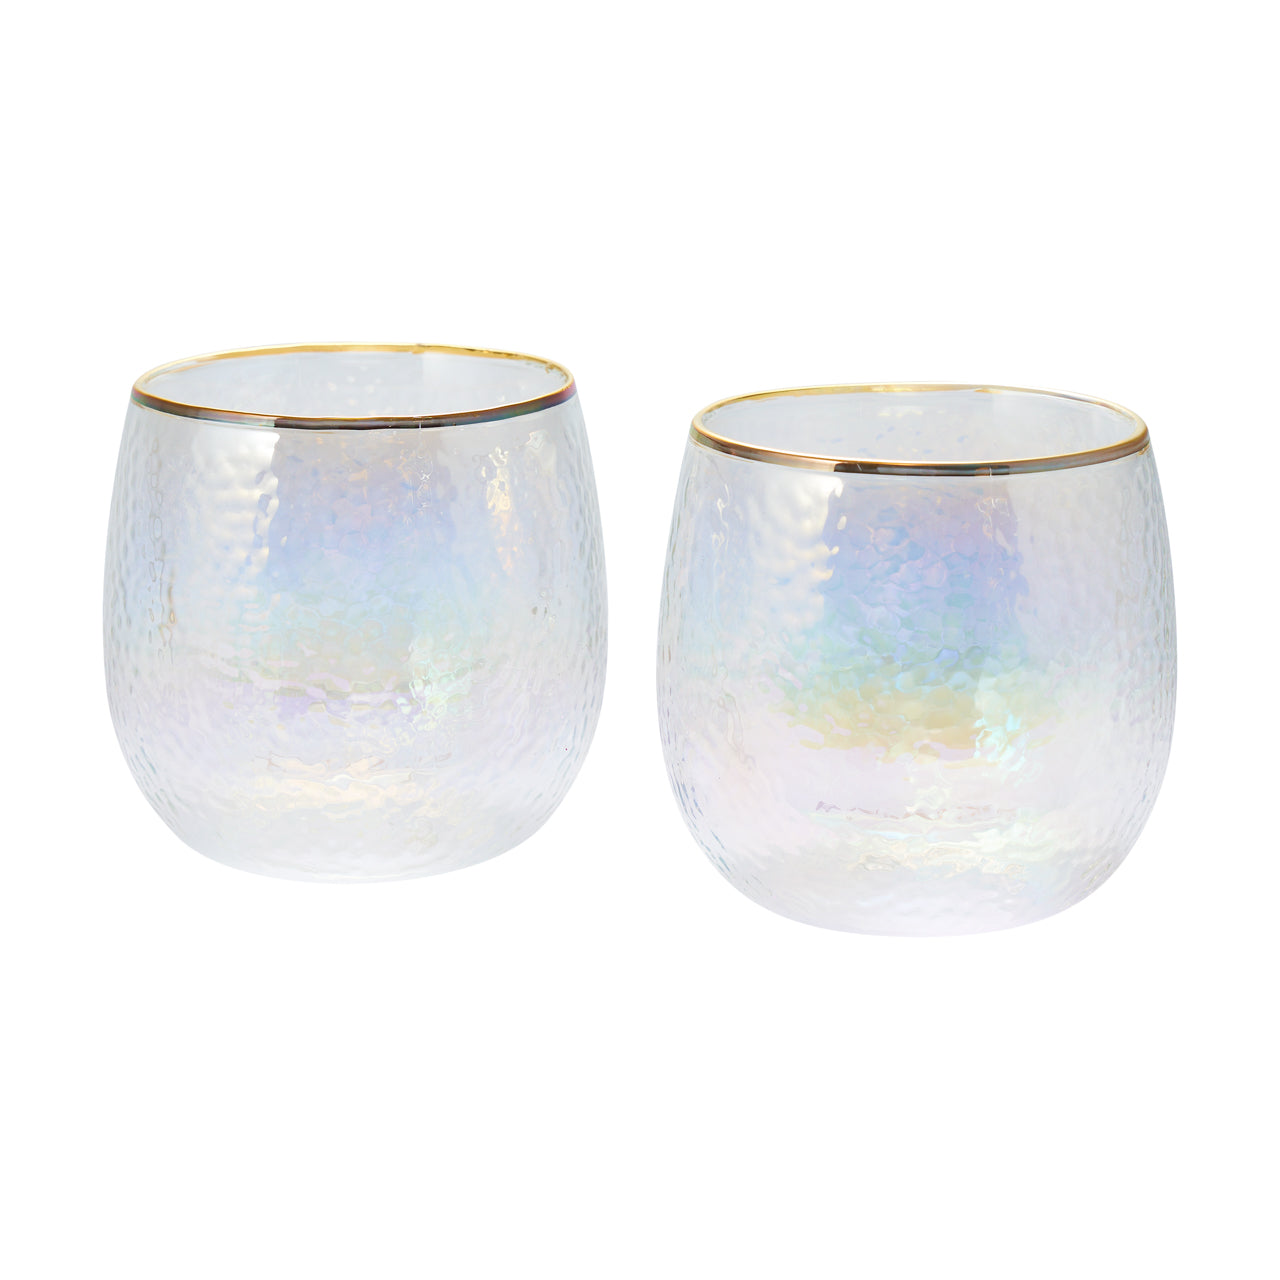 Set de vasos doble vidrio iridescent – Adagio Teas